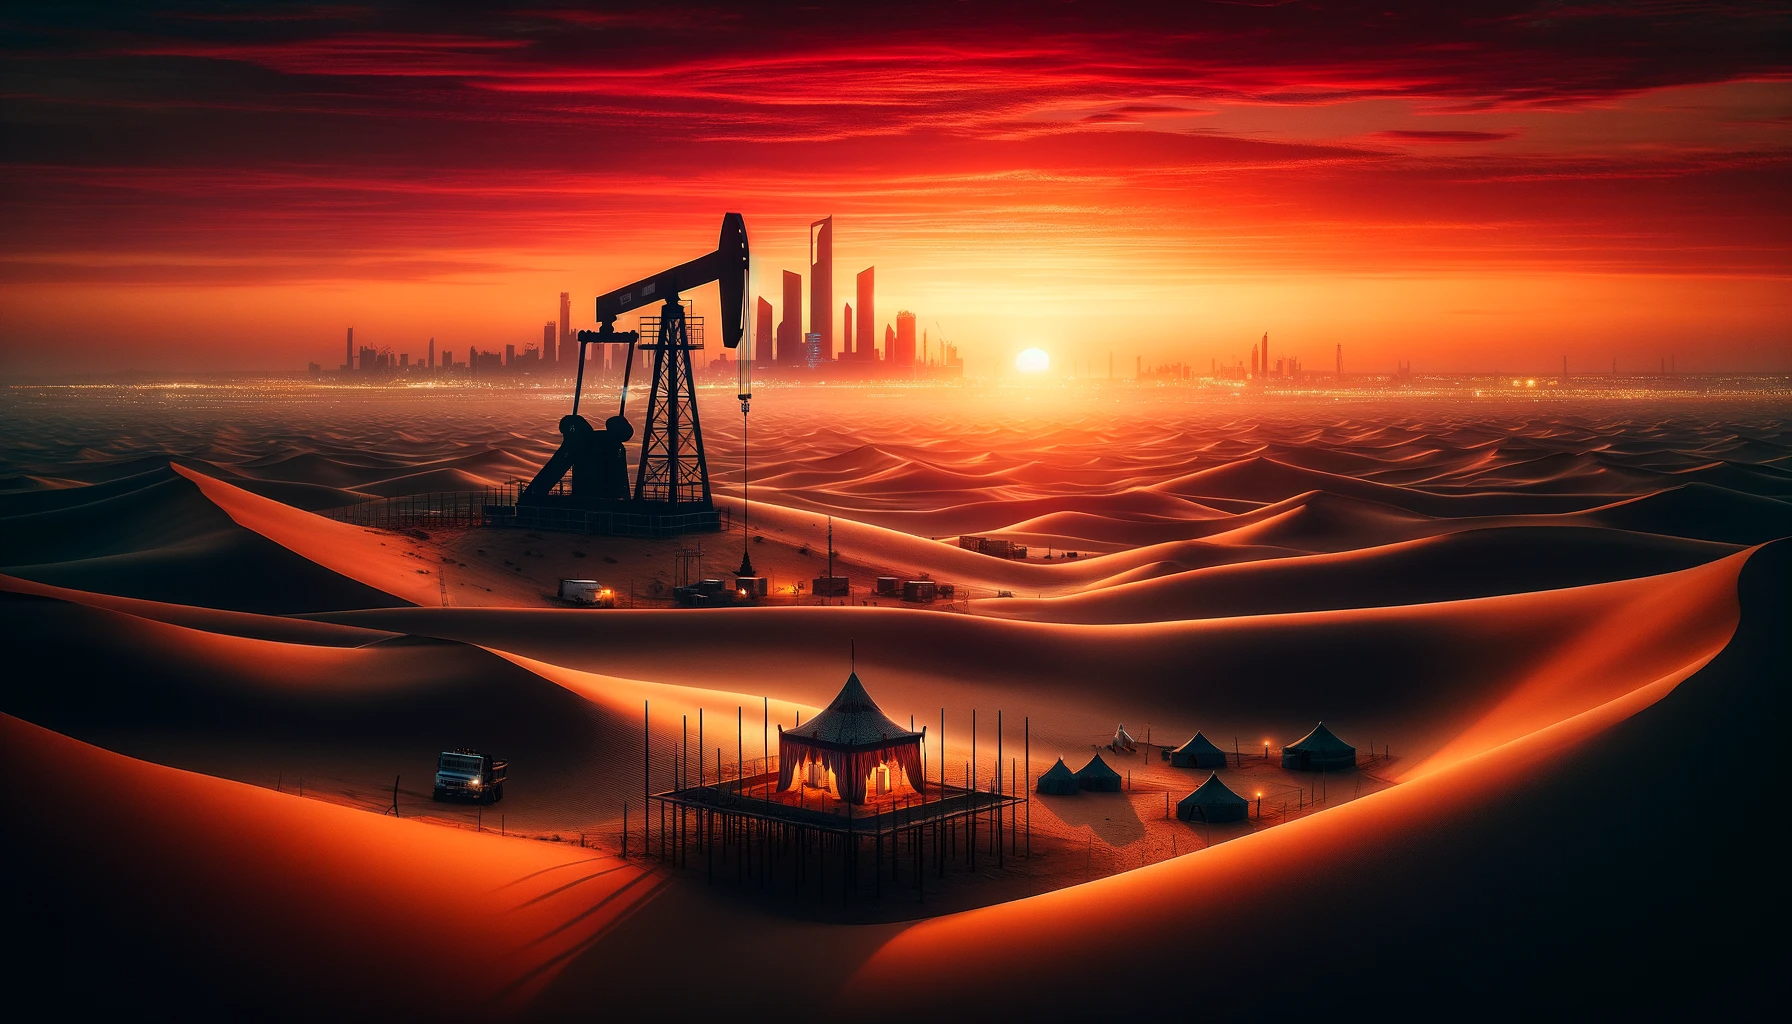 Saudi Arabia's Oil plans